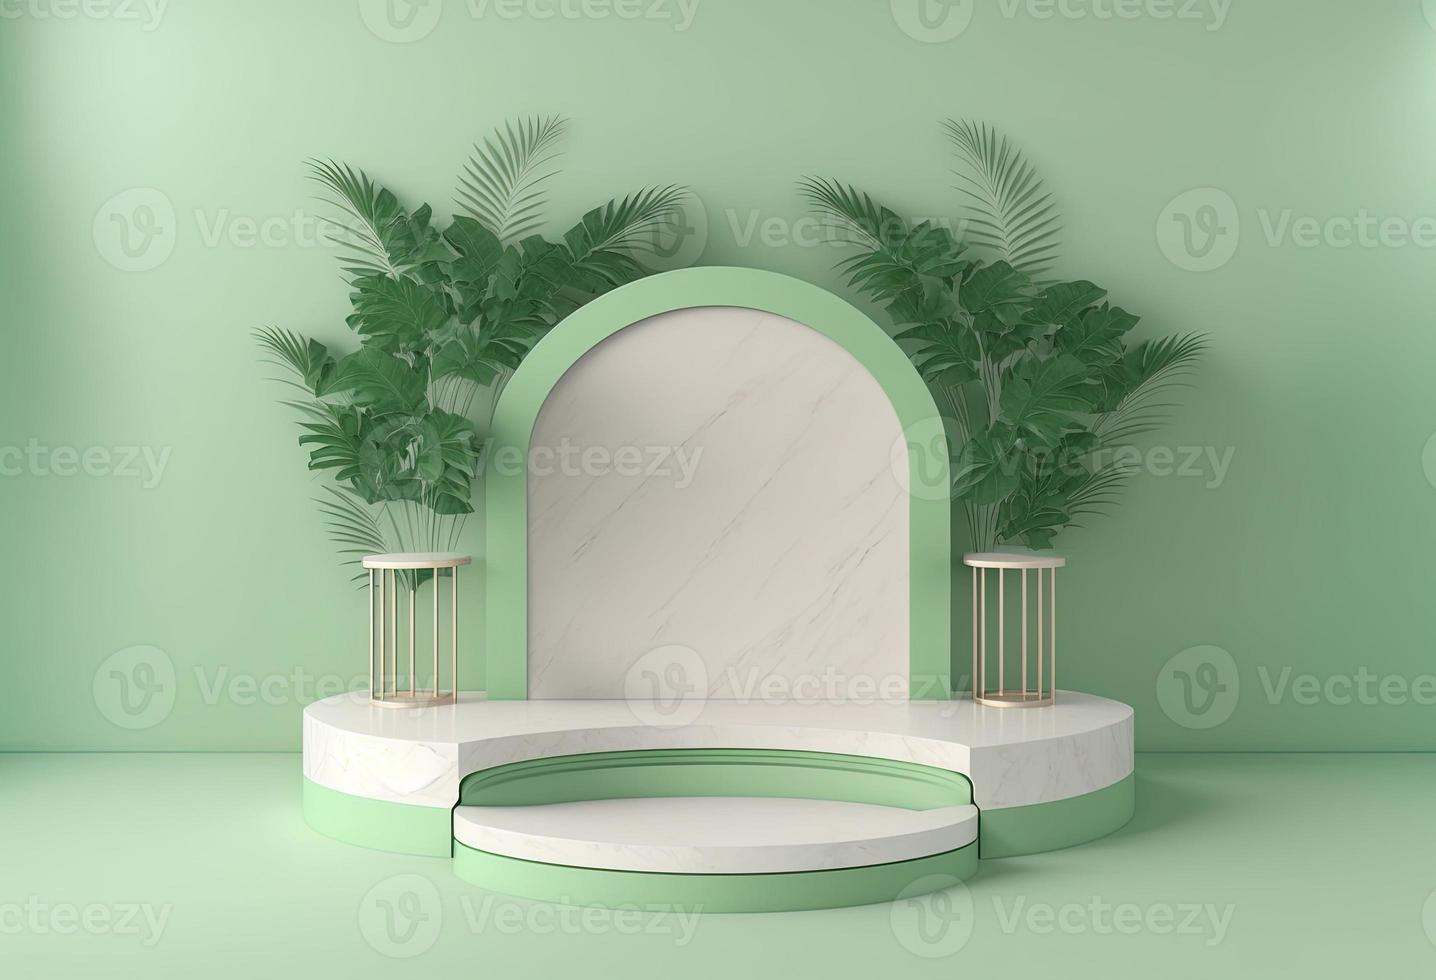 illustration de rendu 3d réaliste d'un podium vert tendre avec une feuille autour pour l'étape du produit photo